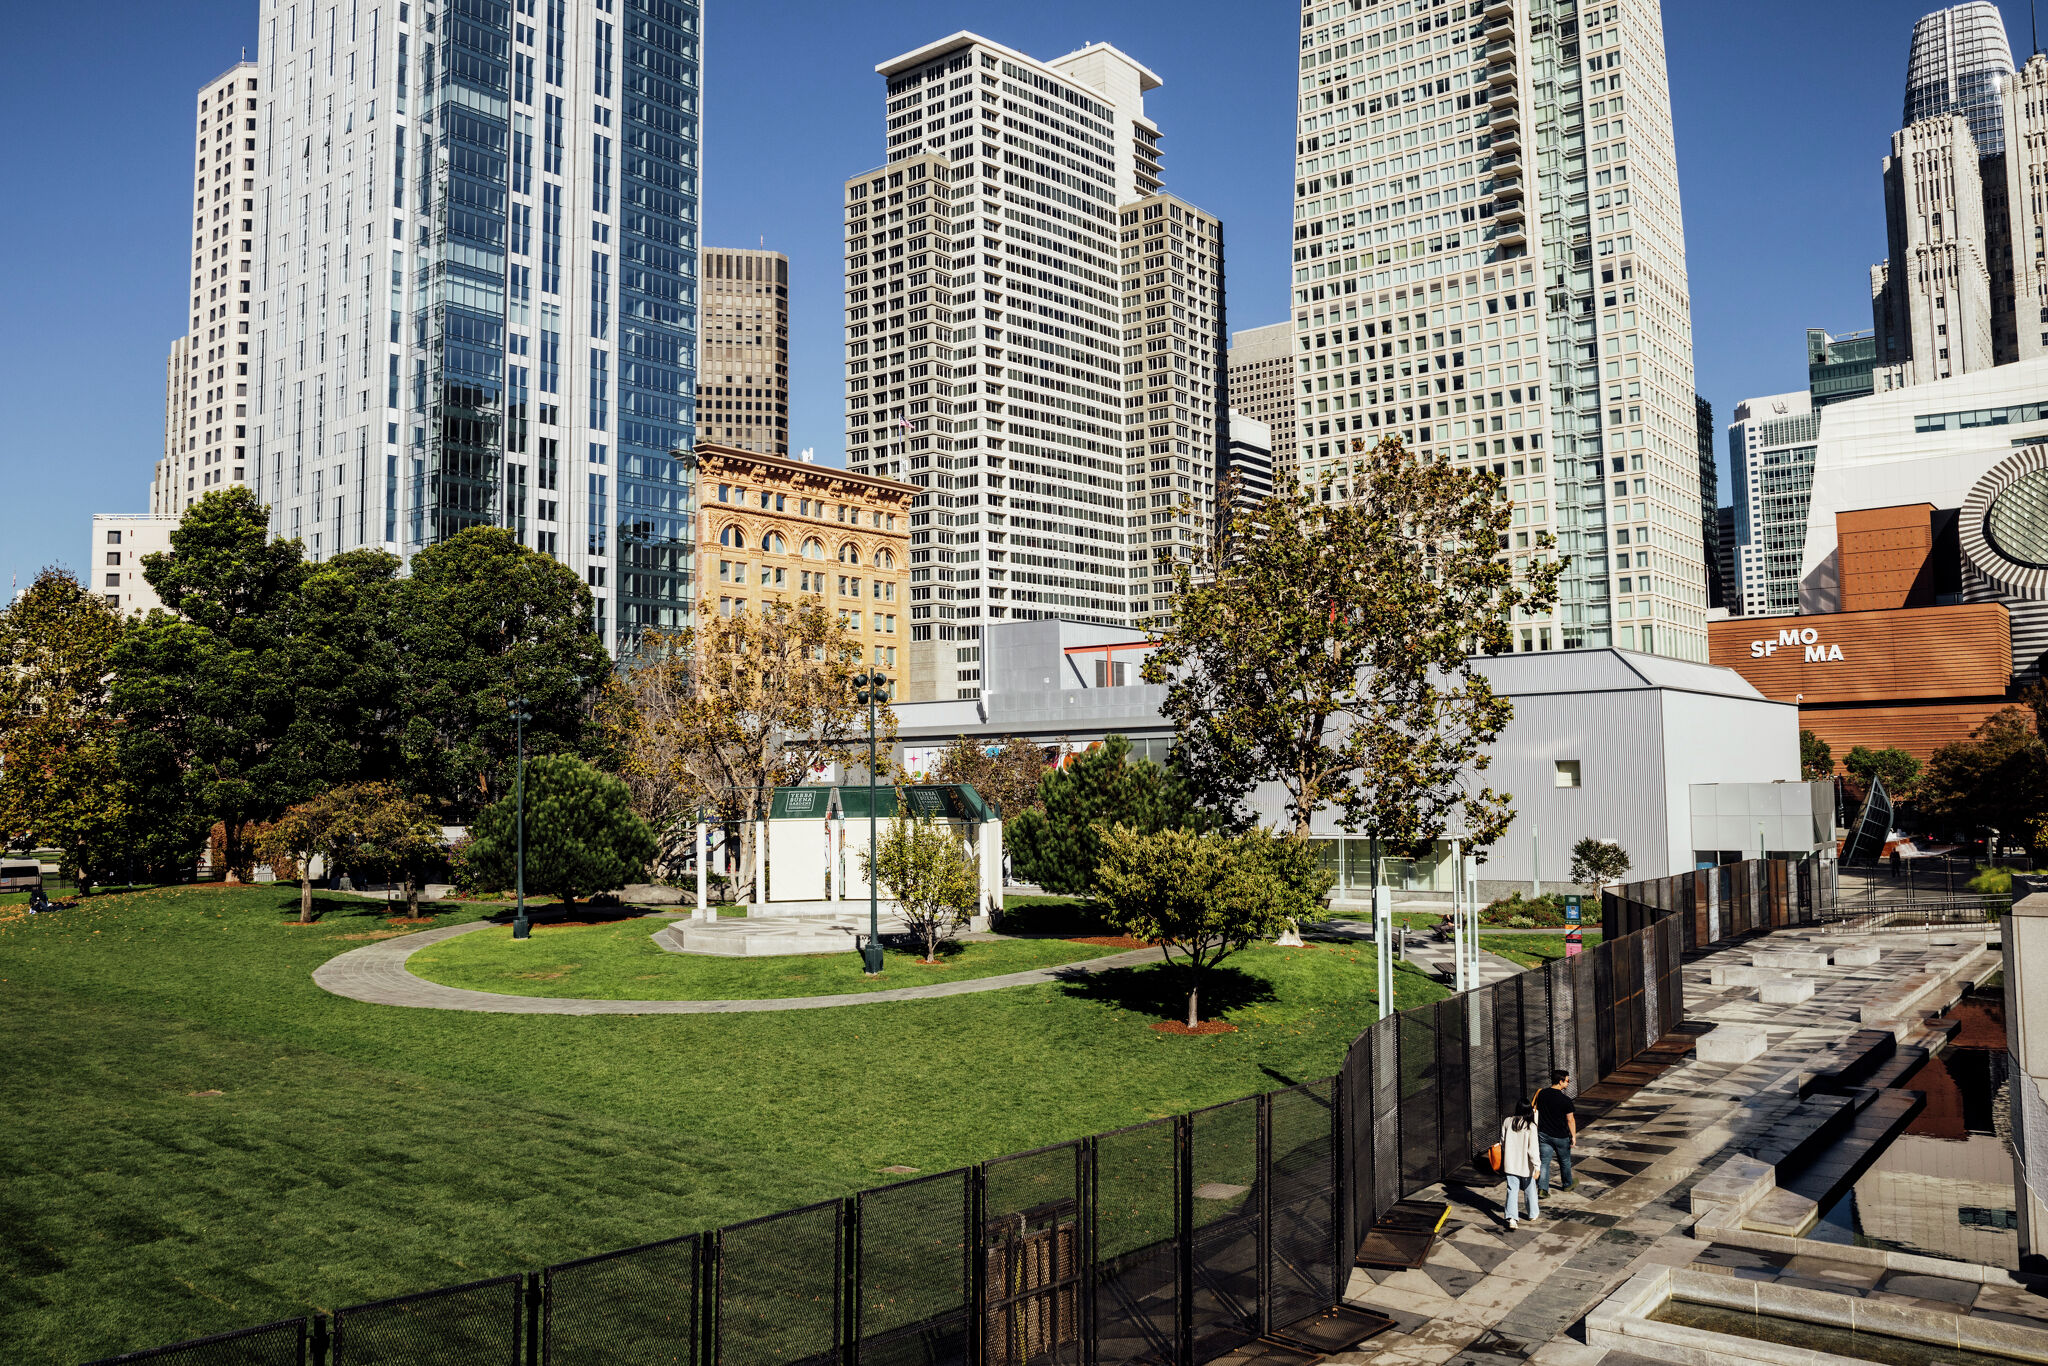 亚太经合组织（APEC）安保区域在旧金山建起了高围栏。让我们来看看它是什么样子的